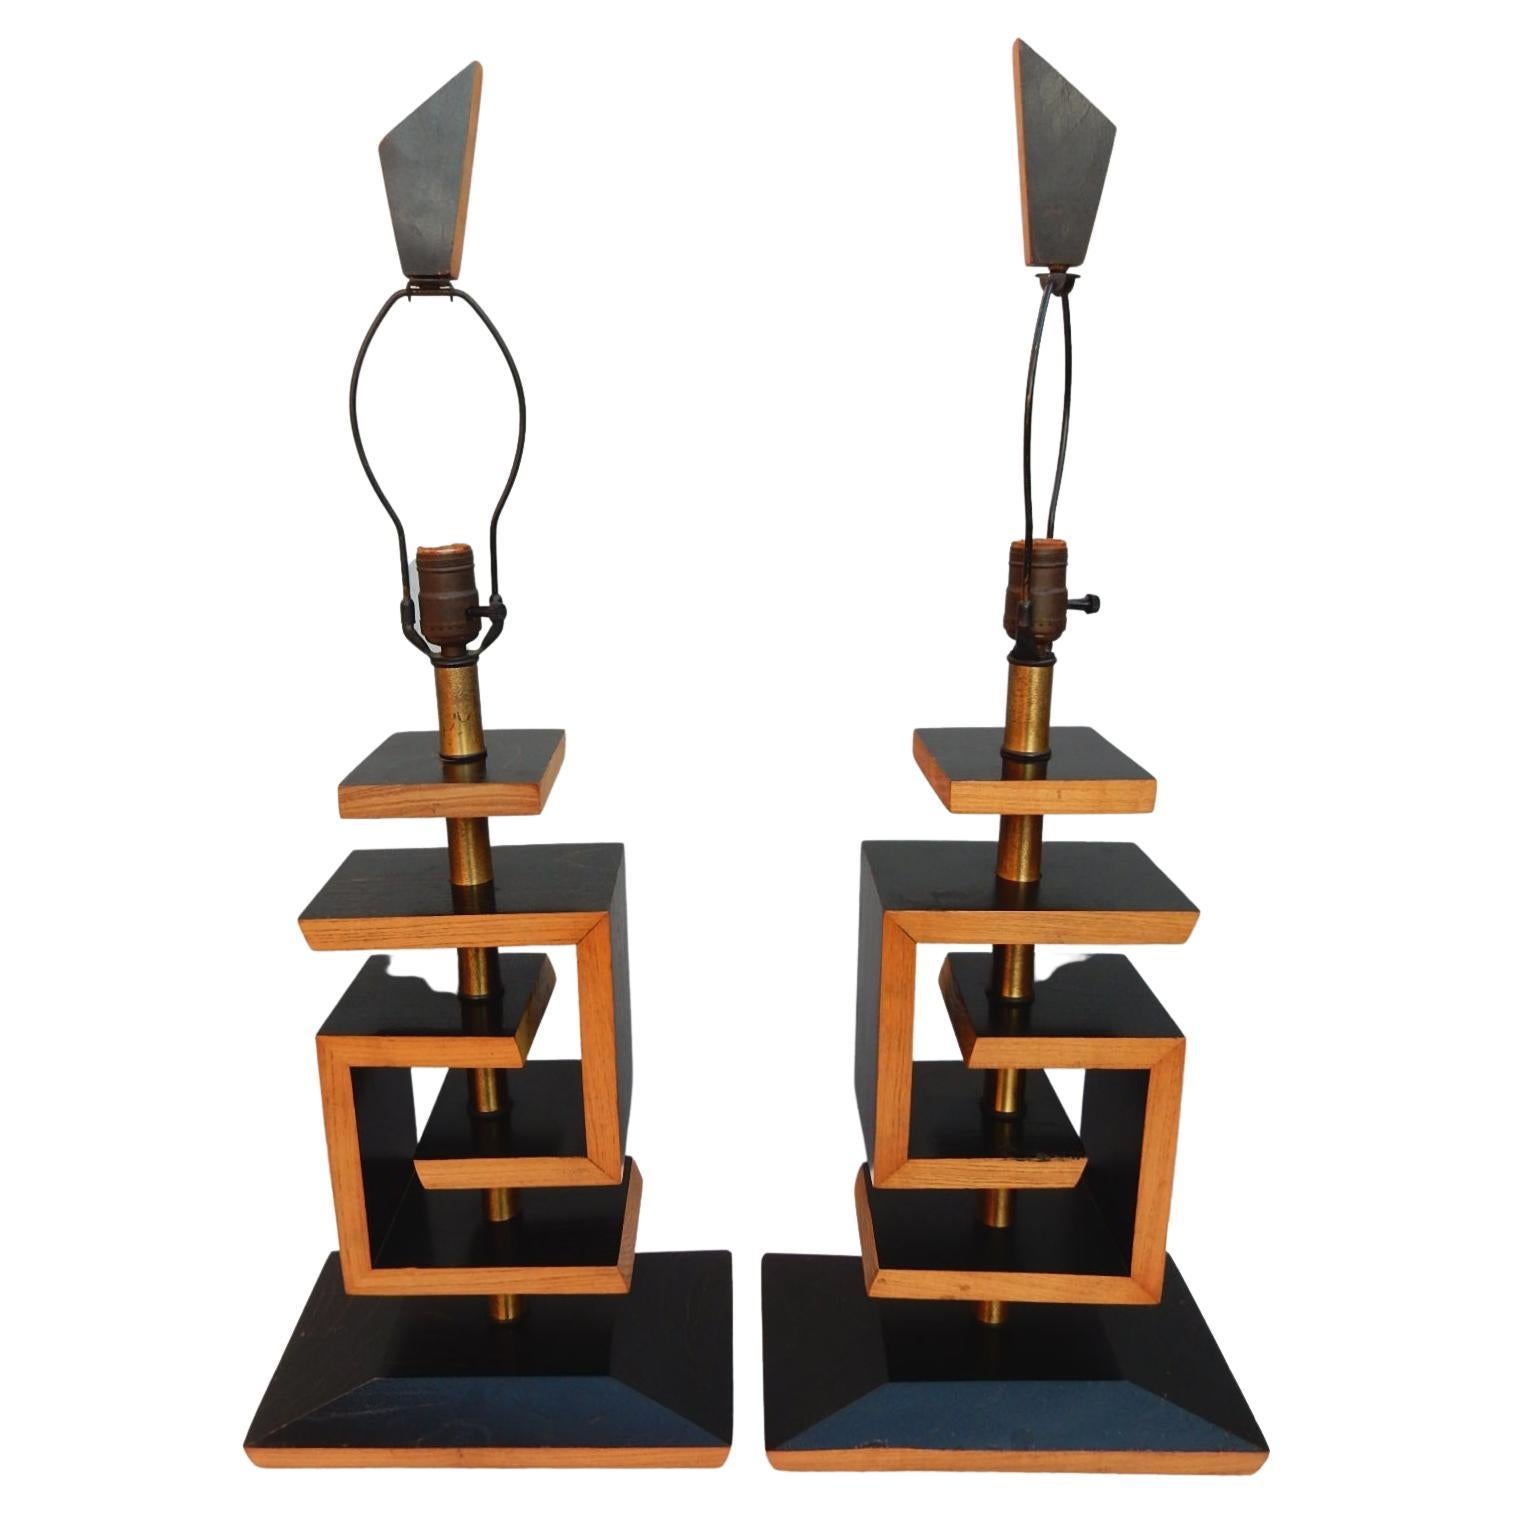 Ein dramatisches Paar geometrischer Tischlampen aus kerosiertem Eichenholz, entworfen im Stil von James Mont, ca. Ende der 1940er Jahre.
Zweifarbiges Ebenholz und Naturfarbe. 
Im Lieferumfang sind die originalen zweifarbigen Stoffschirme und